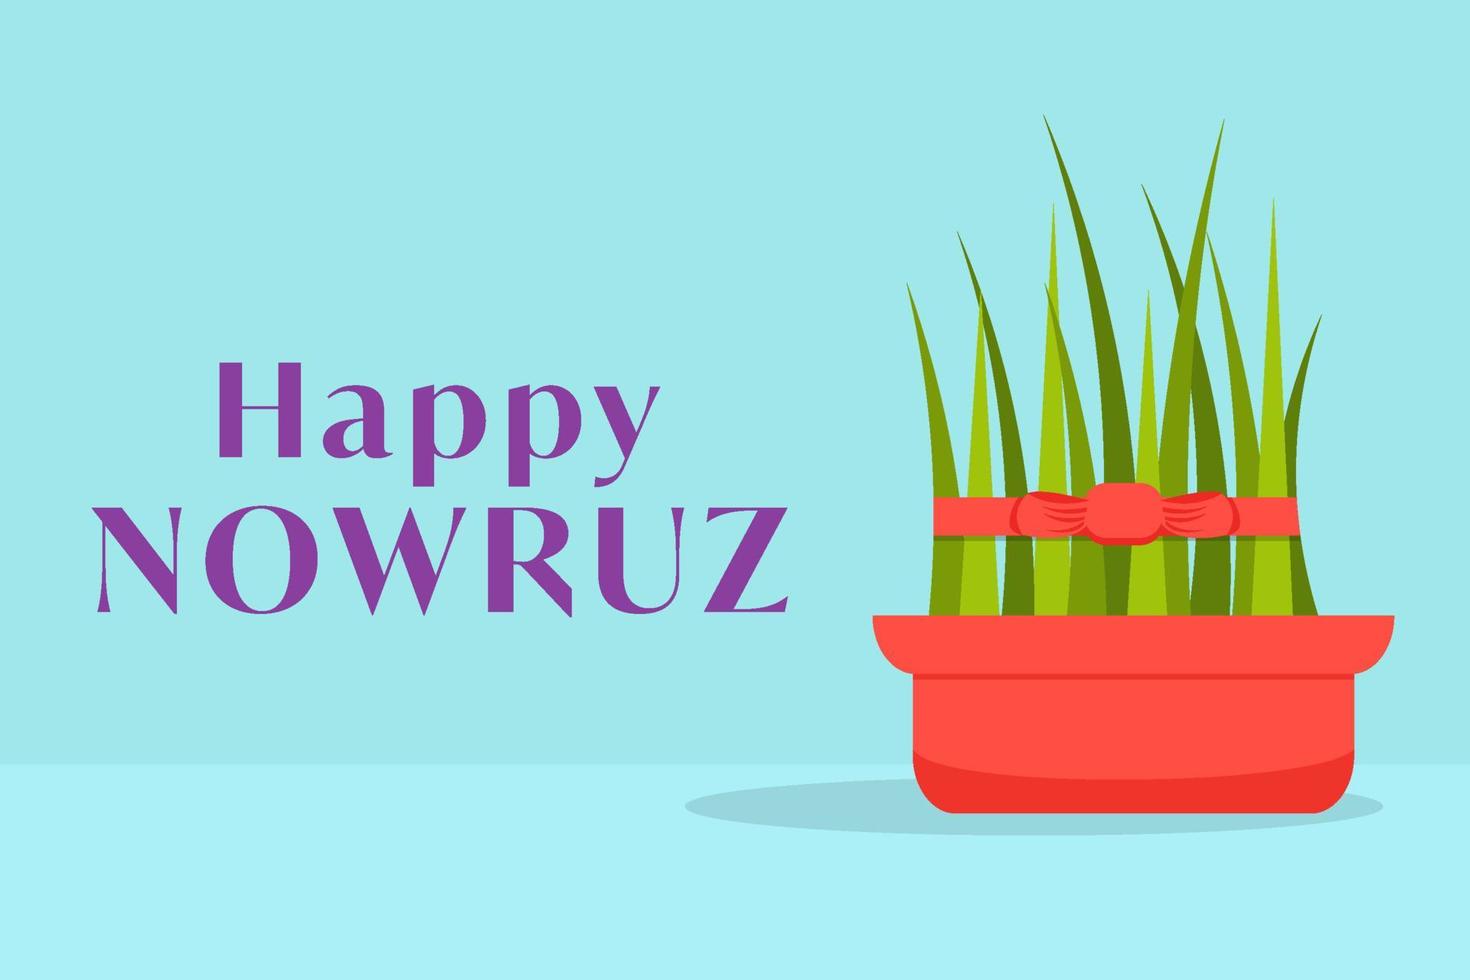 piatto design contento Nowruz orizzontale bandiera manifesto illustrazione con erba vettore